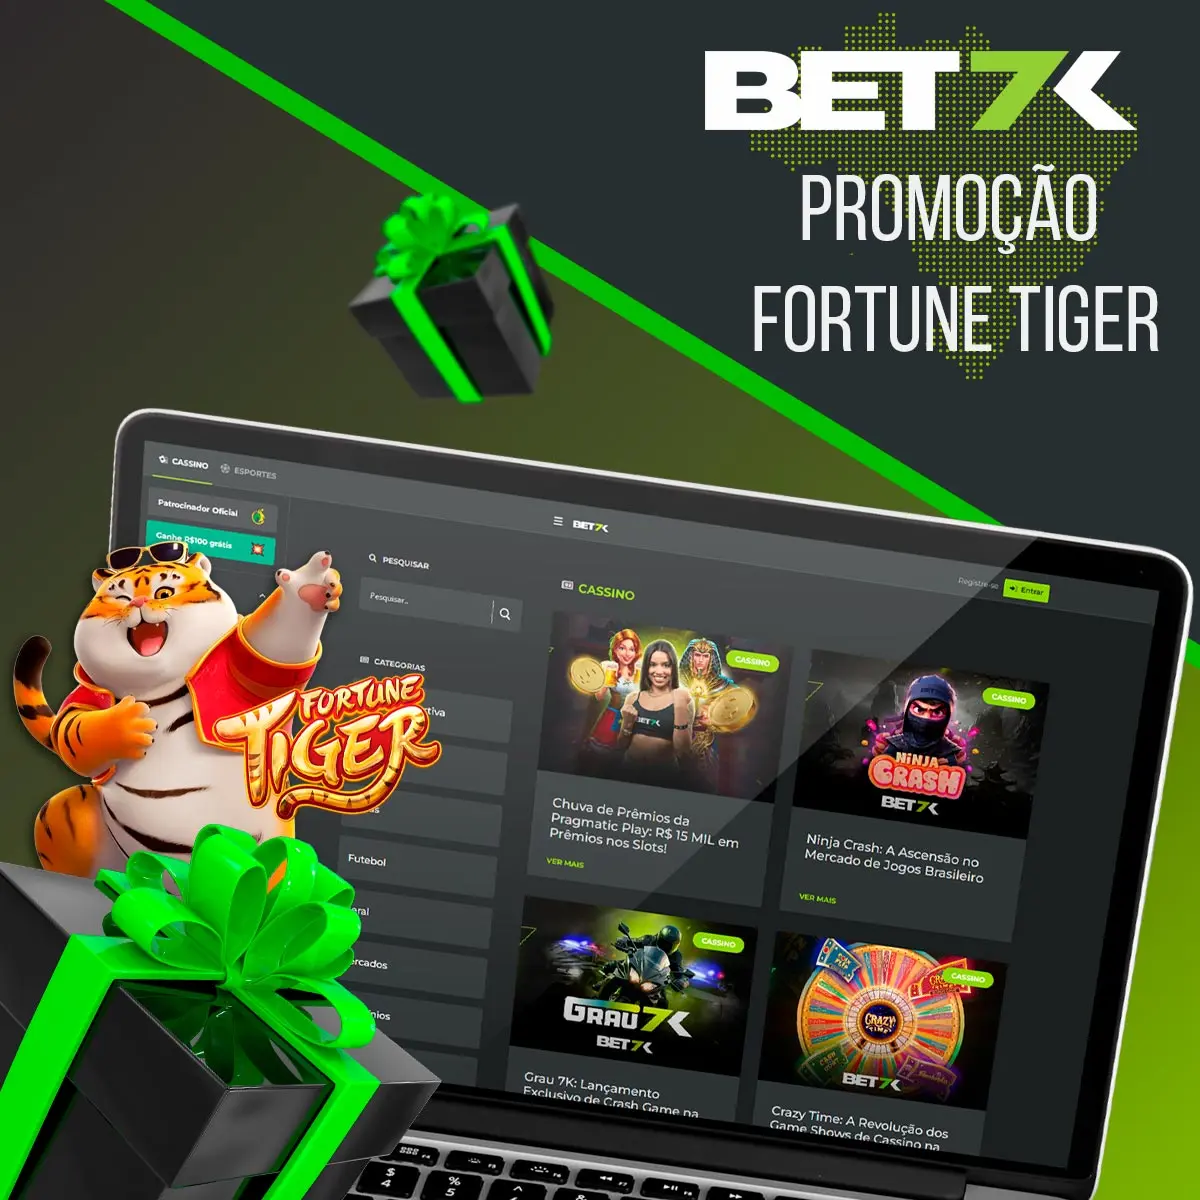 Promoção Fortune Tiger Bet7k